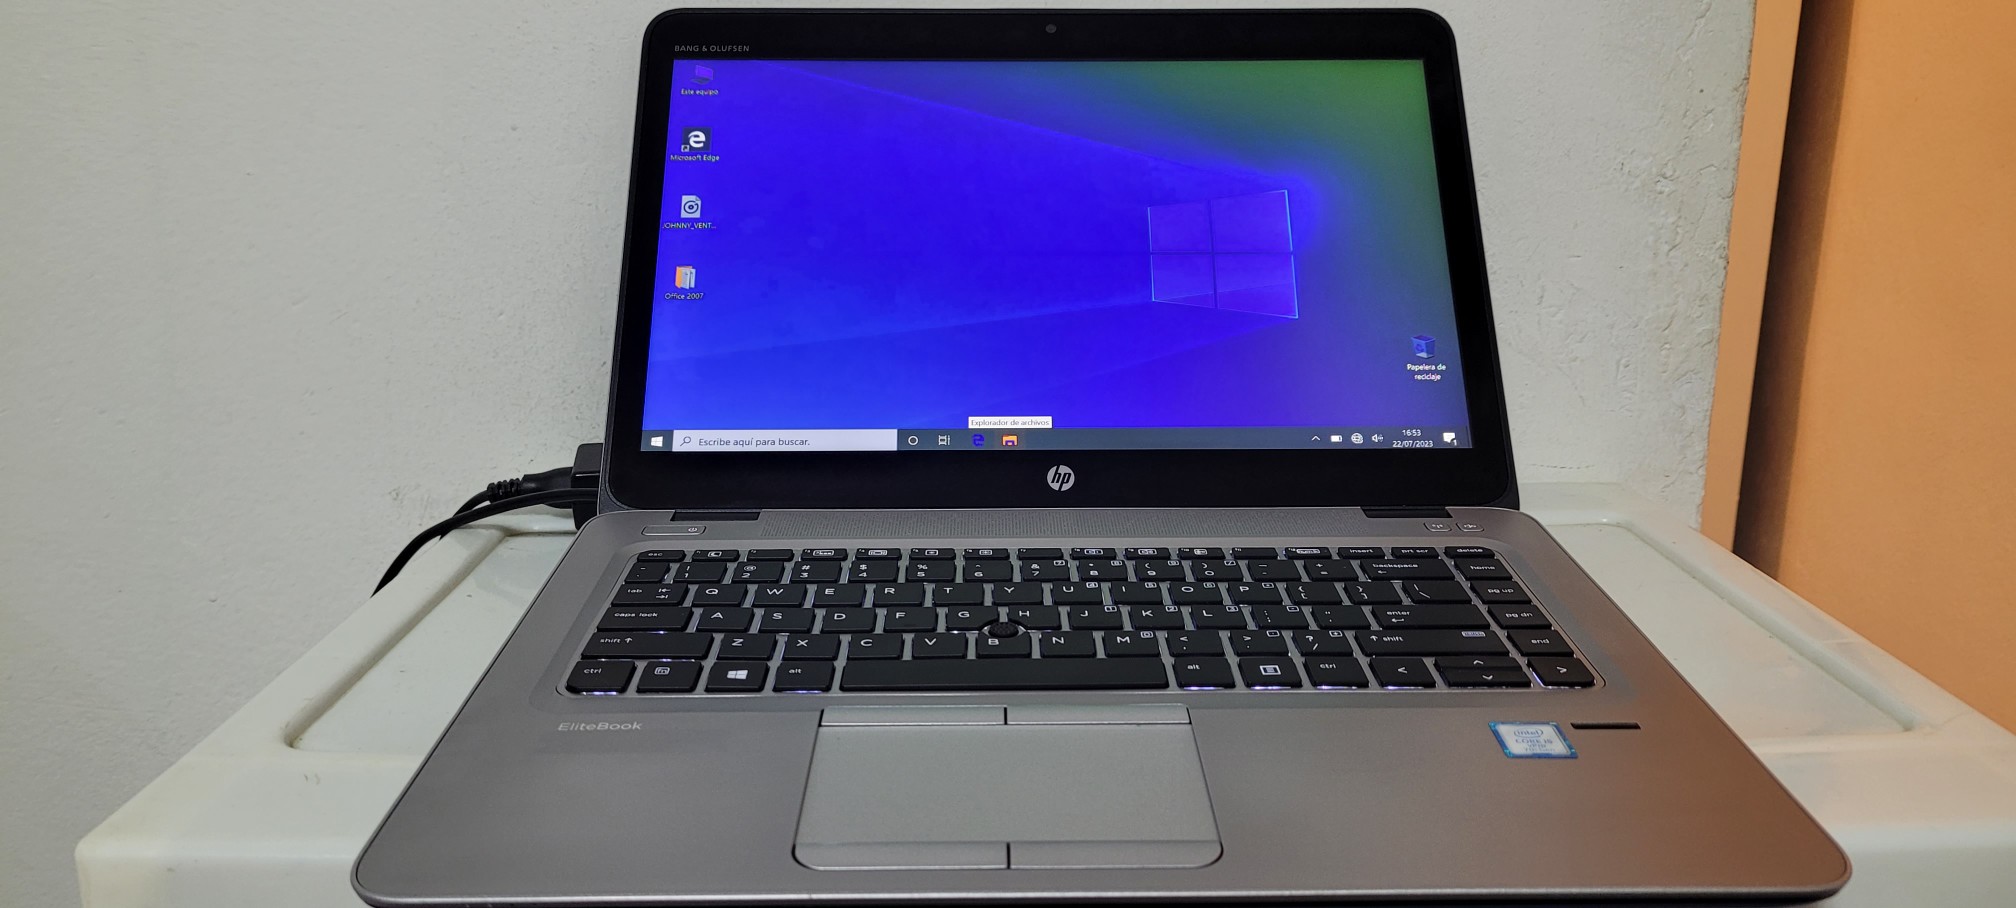 computadoras y laptops - Laptop hp Touch 14 Pulg Core i5 7ma Ram 8gb ddr4 Disco 128gb SSD Y 320gb full 0